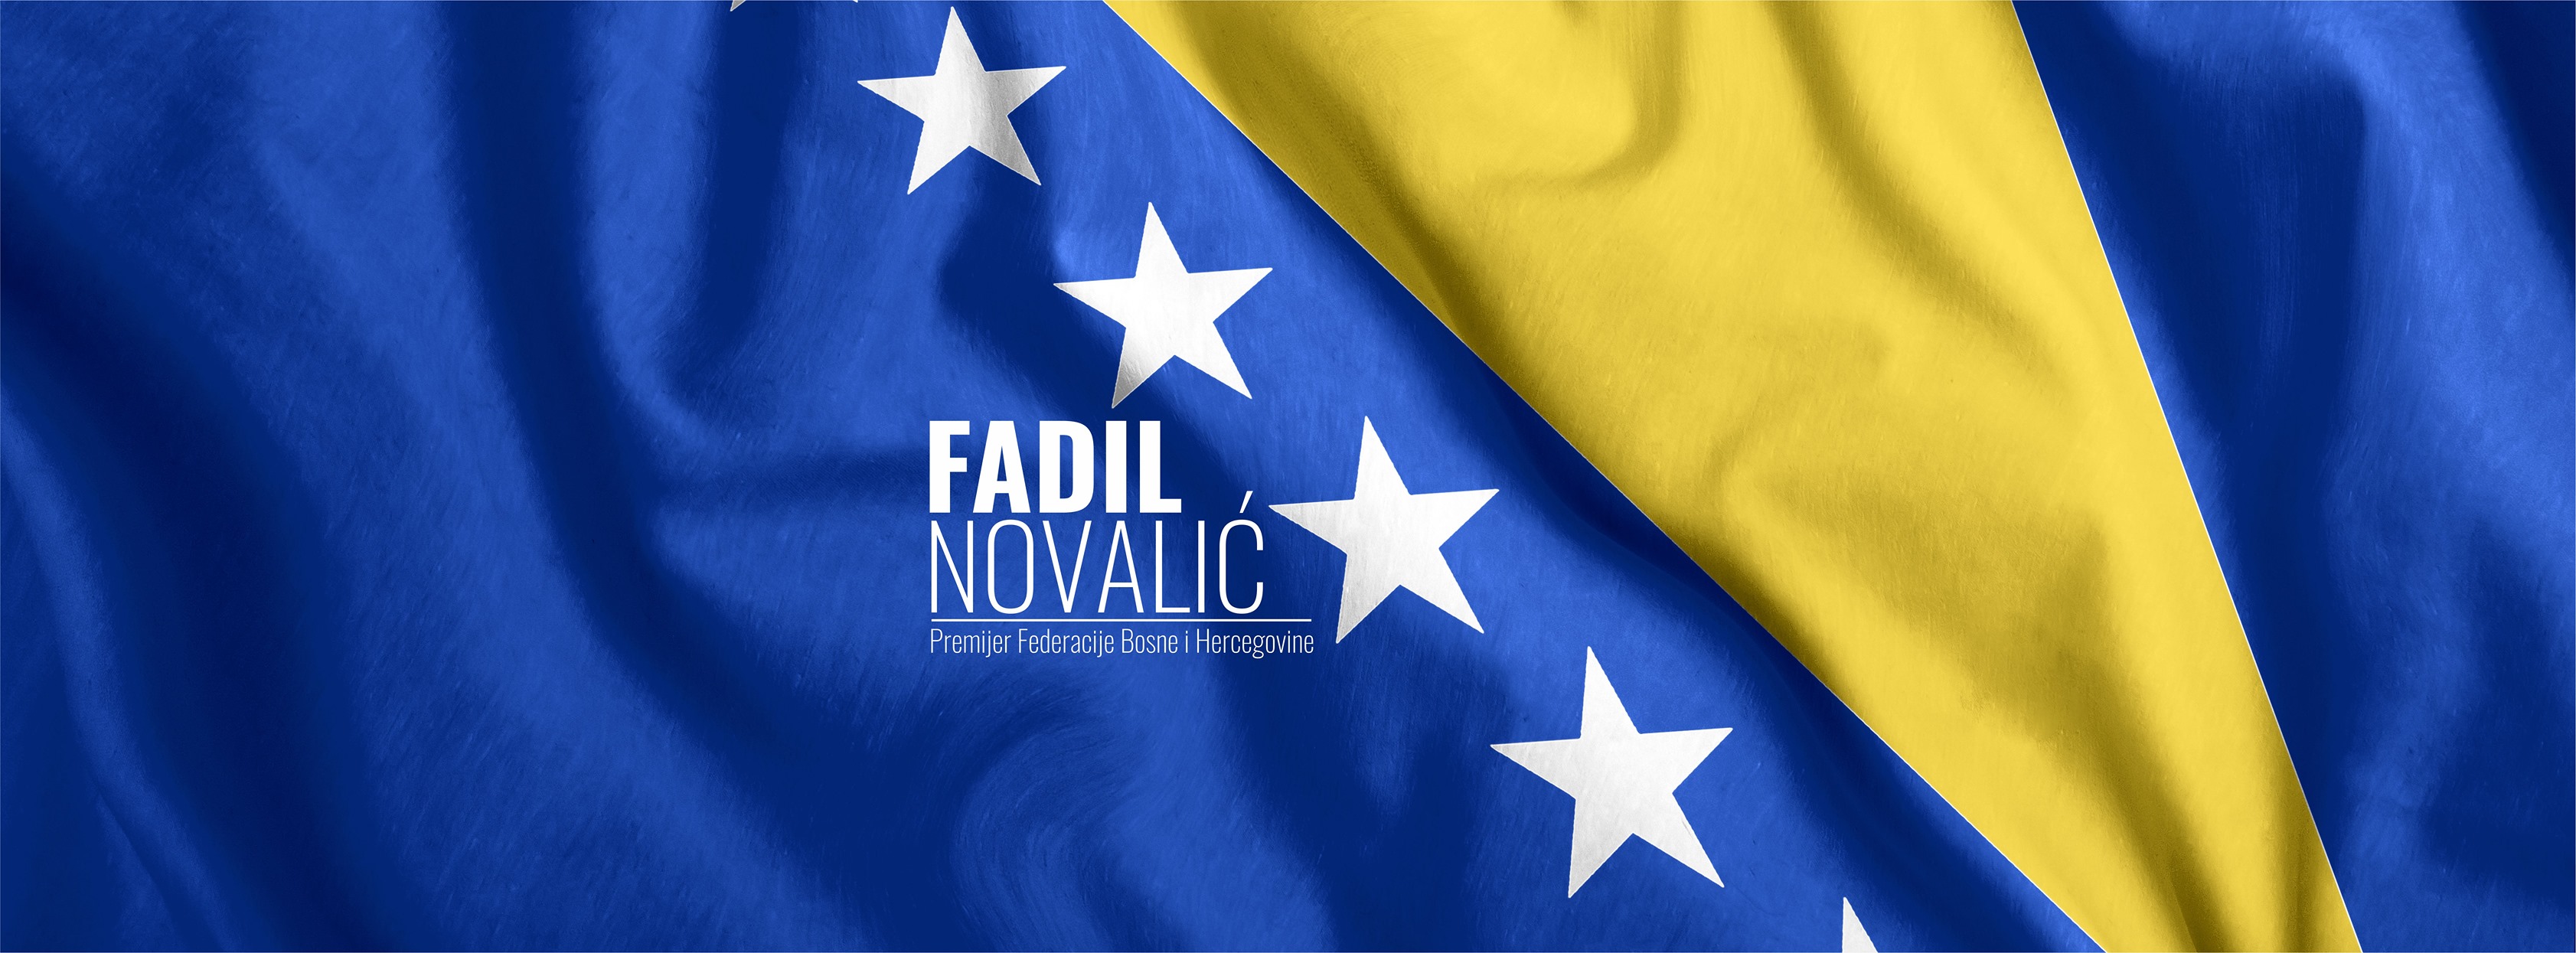 Fadil Novalić 'dobio' lažnu Facebook stranicu, ali će otvoriti pravu